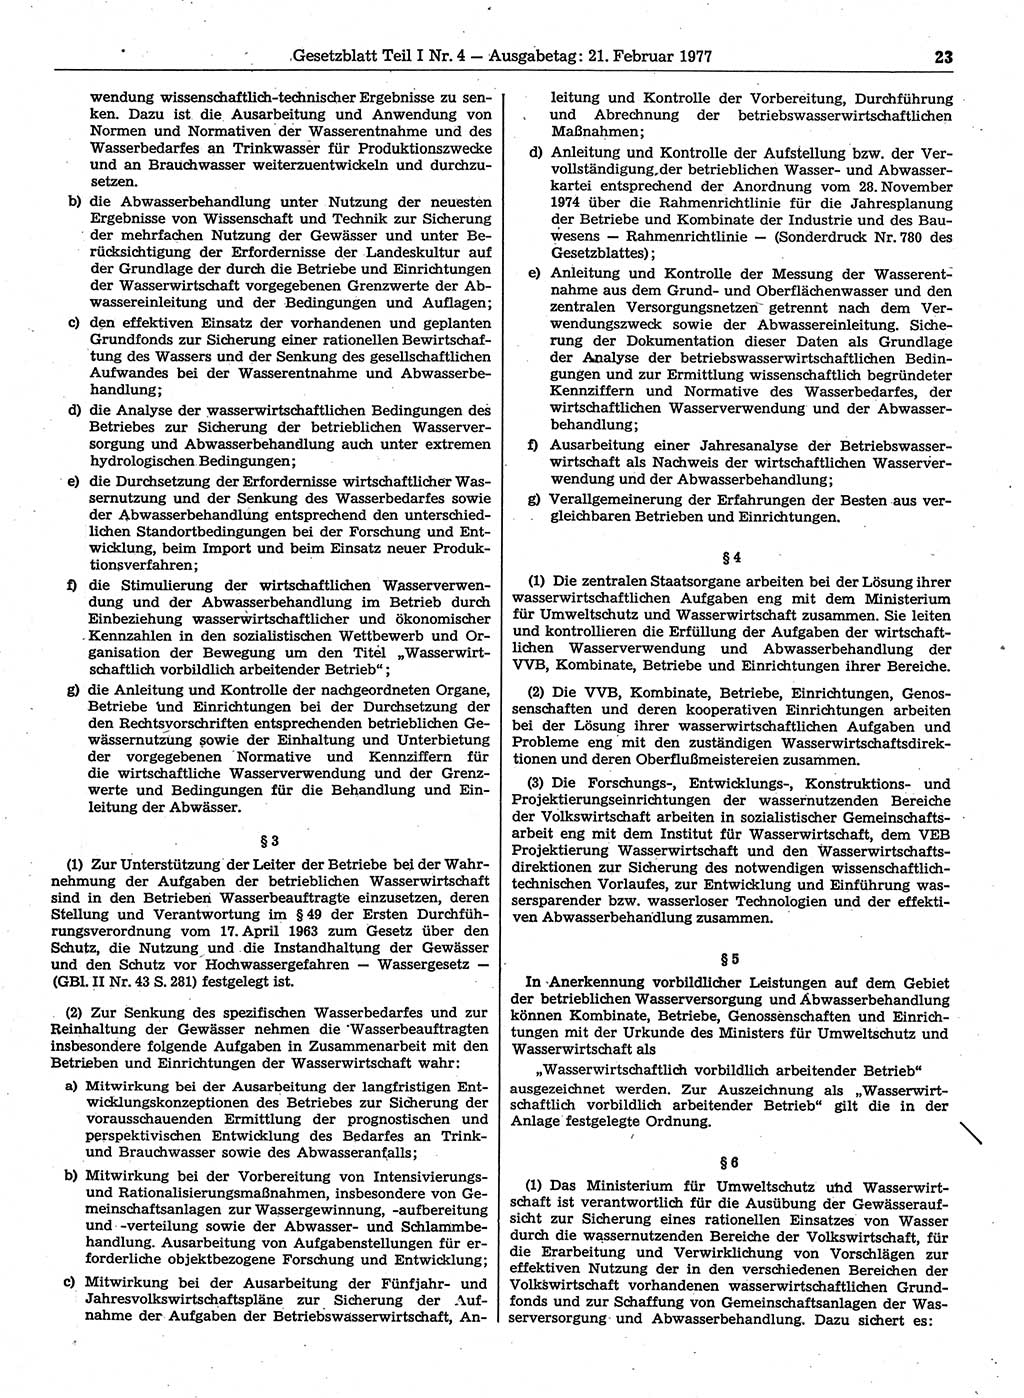 Gesetzblatt (GBl.) der Deutschen Demokratischen Republik (DDR) Teil Ⅰ 1977, Seite 23 (GBl. DDR Ⅰ 1977, S. 23)